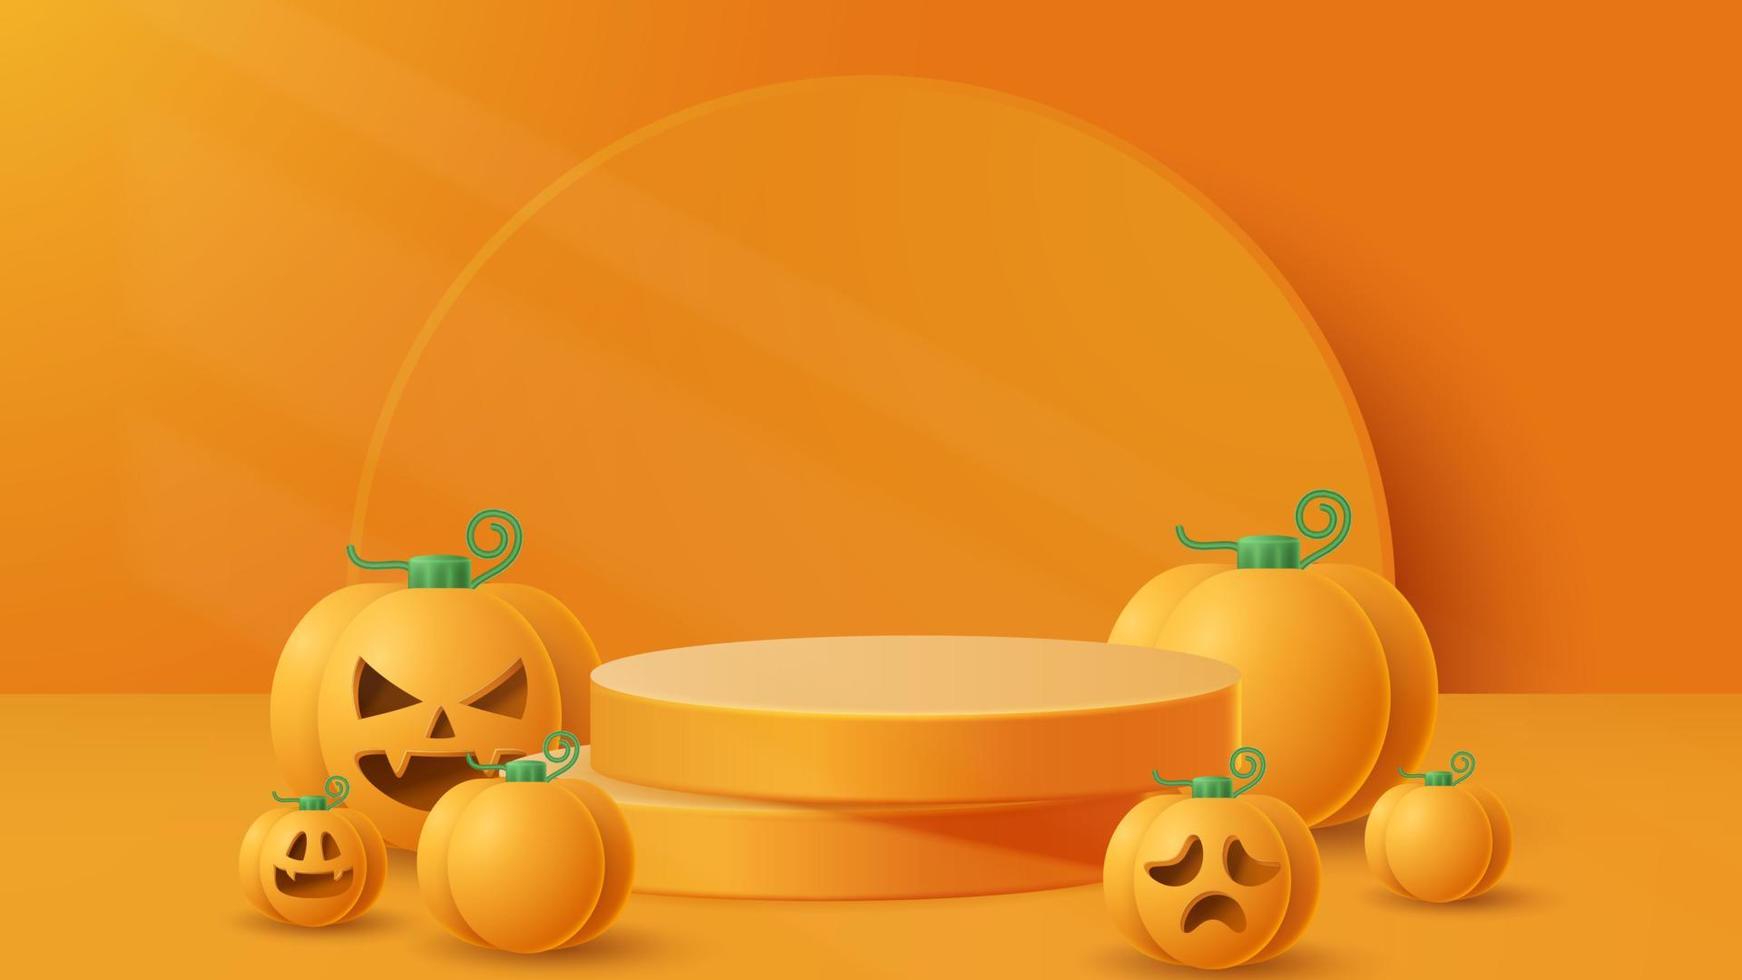 fundo de decoração de pódio de exibição de halloween com ornamento assustador. ilustração vetorial 3d vetor